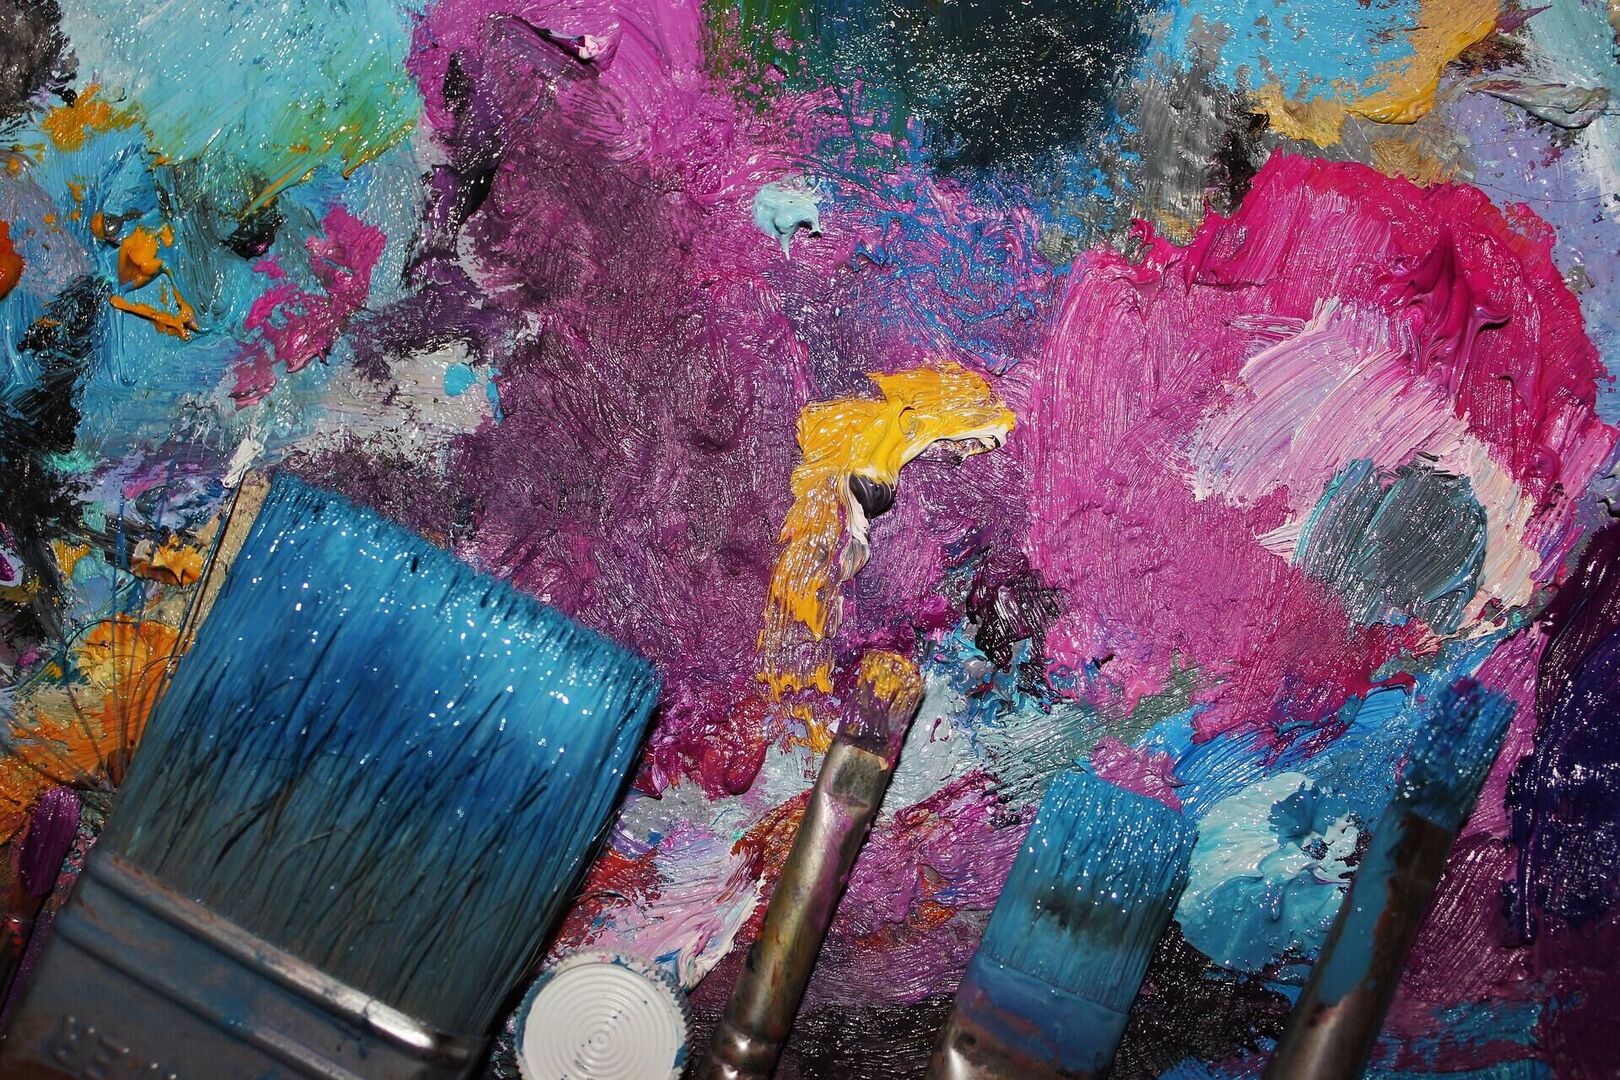 Kunstenaars en makers die kleuren proeven en geluiden zien